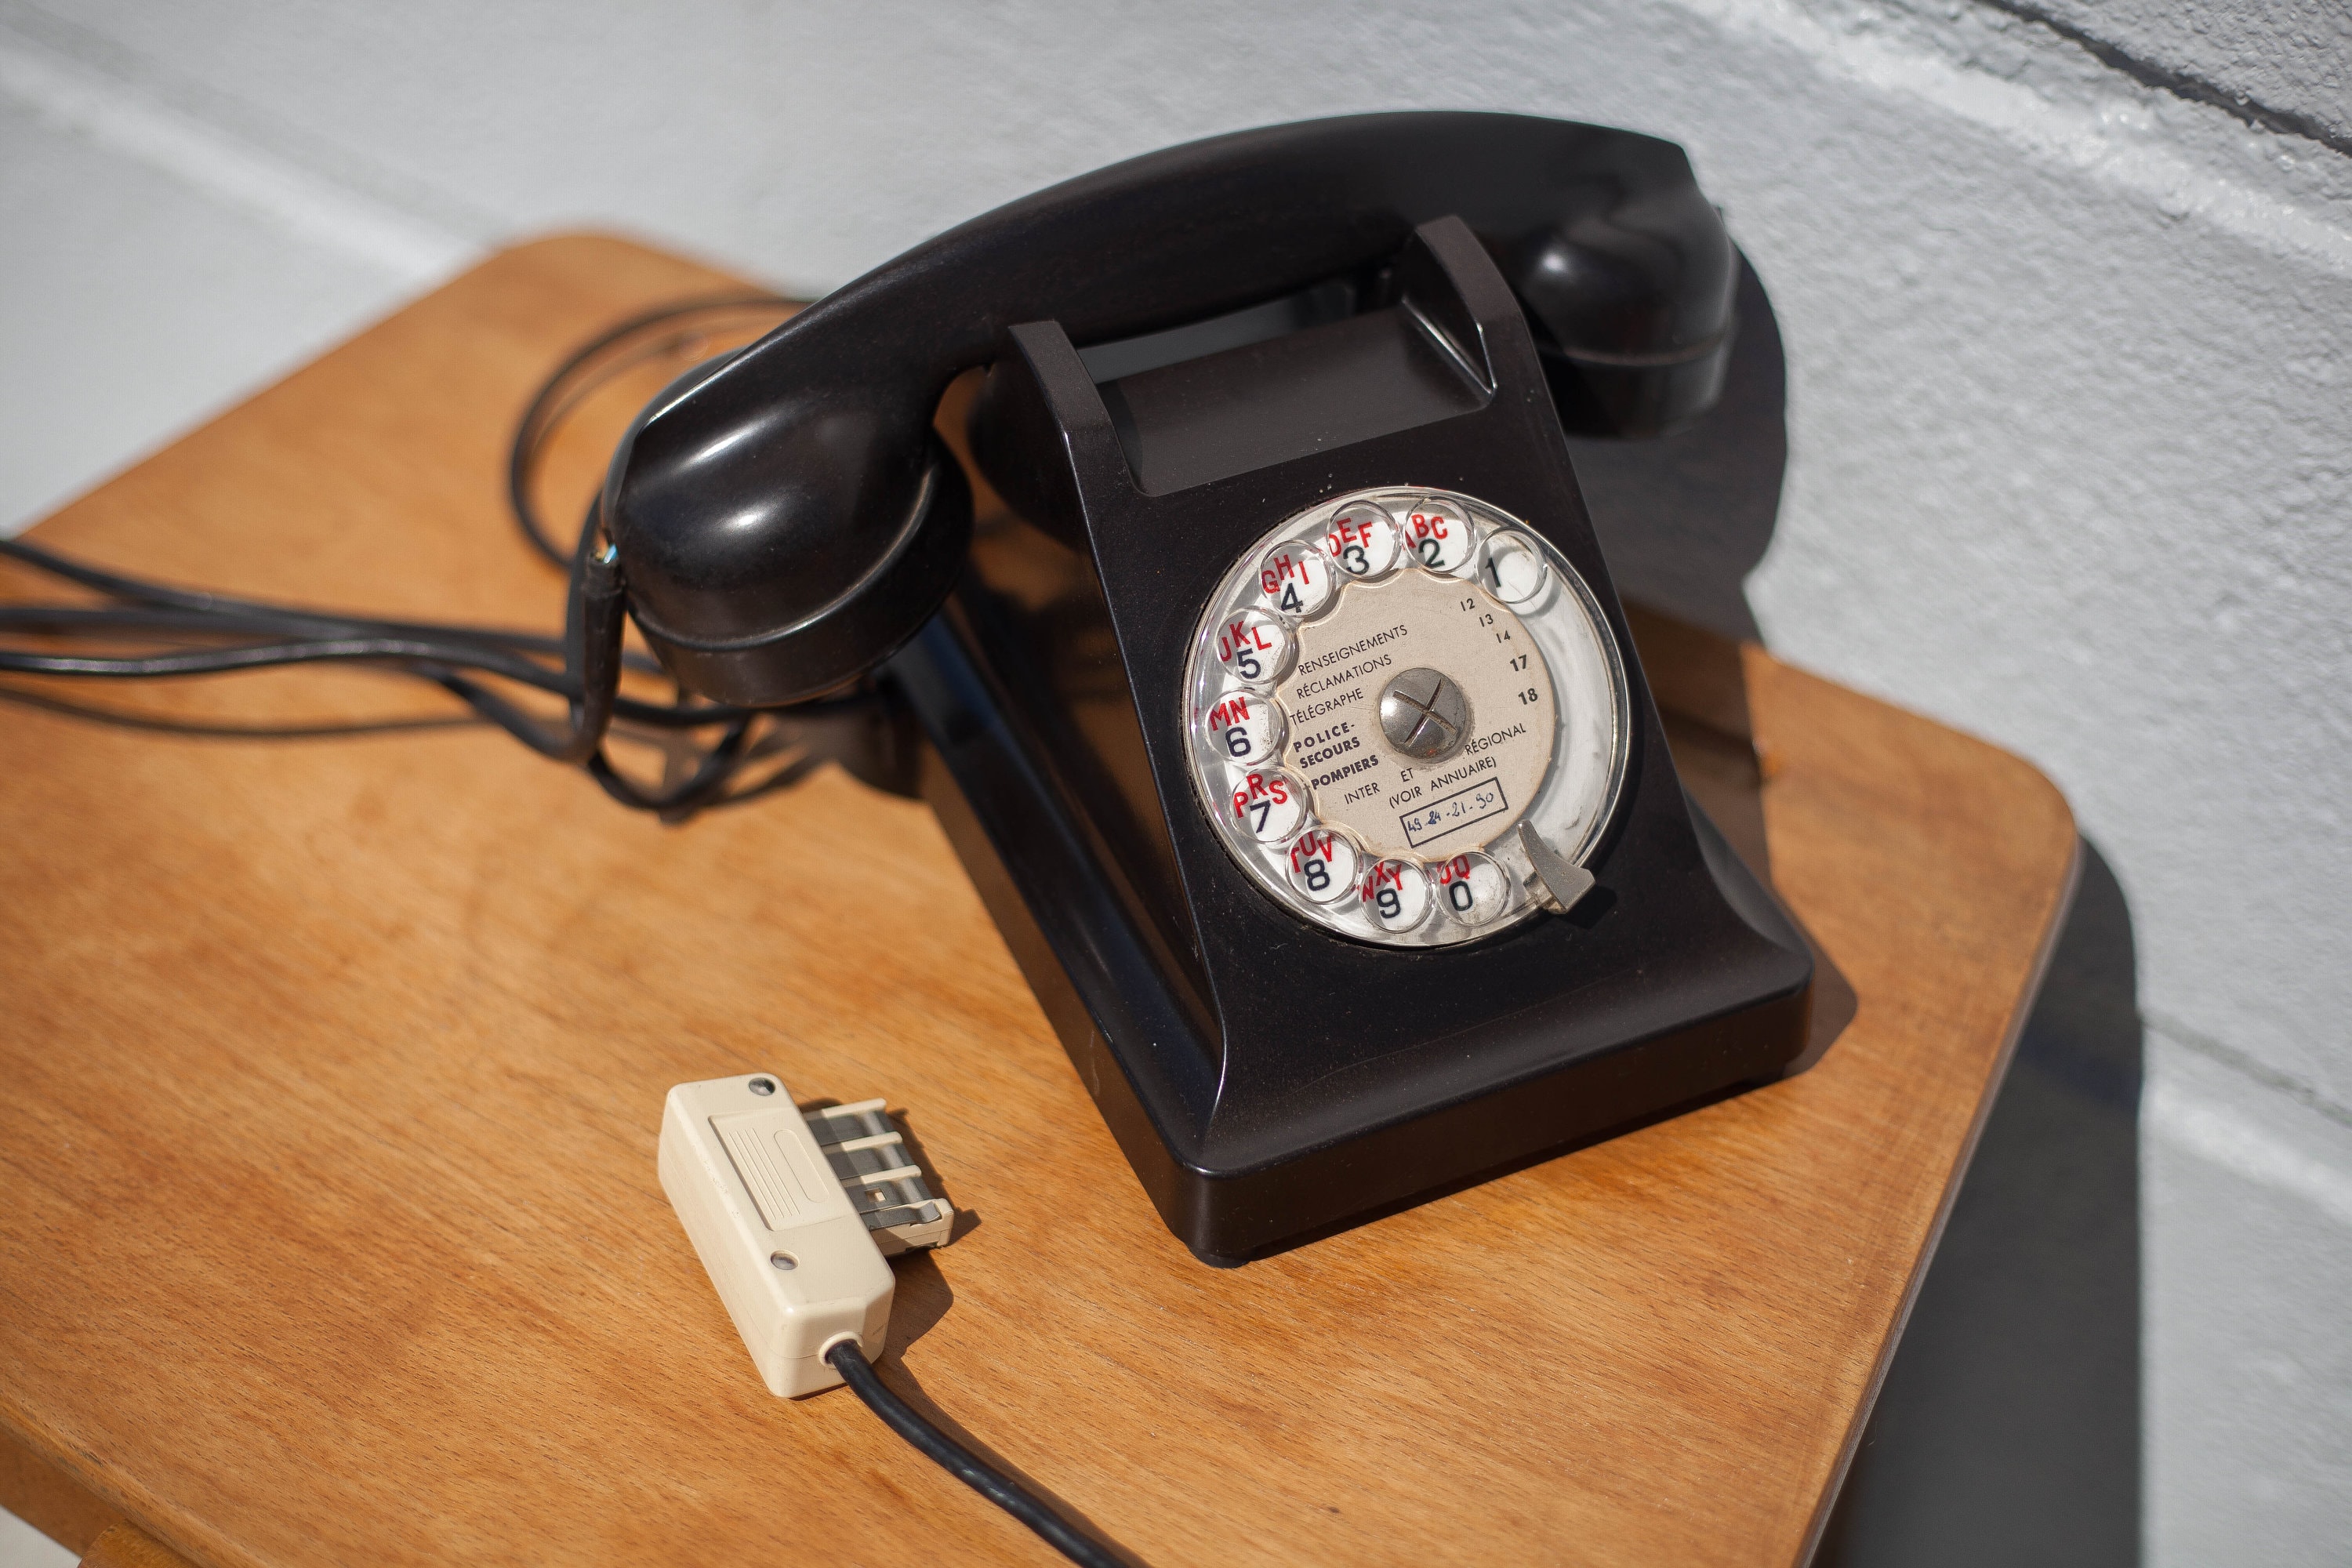 WICHEMI Téléphone vintage rétro à cadran rotatif téléphone fixe ancien  téléphone antique téléphone à l'ancienne école téléphones pour la maison,  le bureau, le café, le bar, étoile de l'hôtel, décoration (doré) 